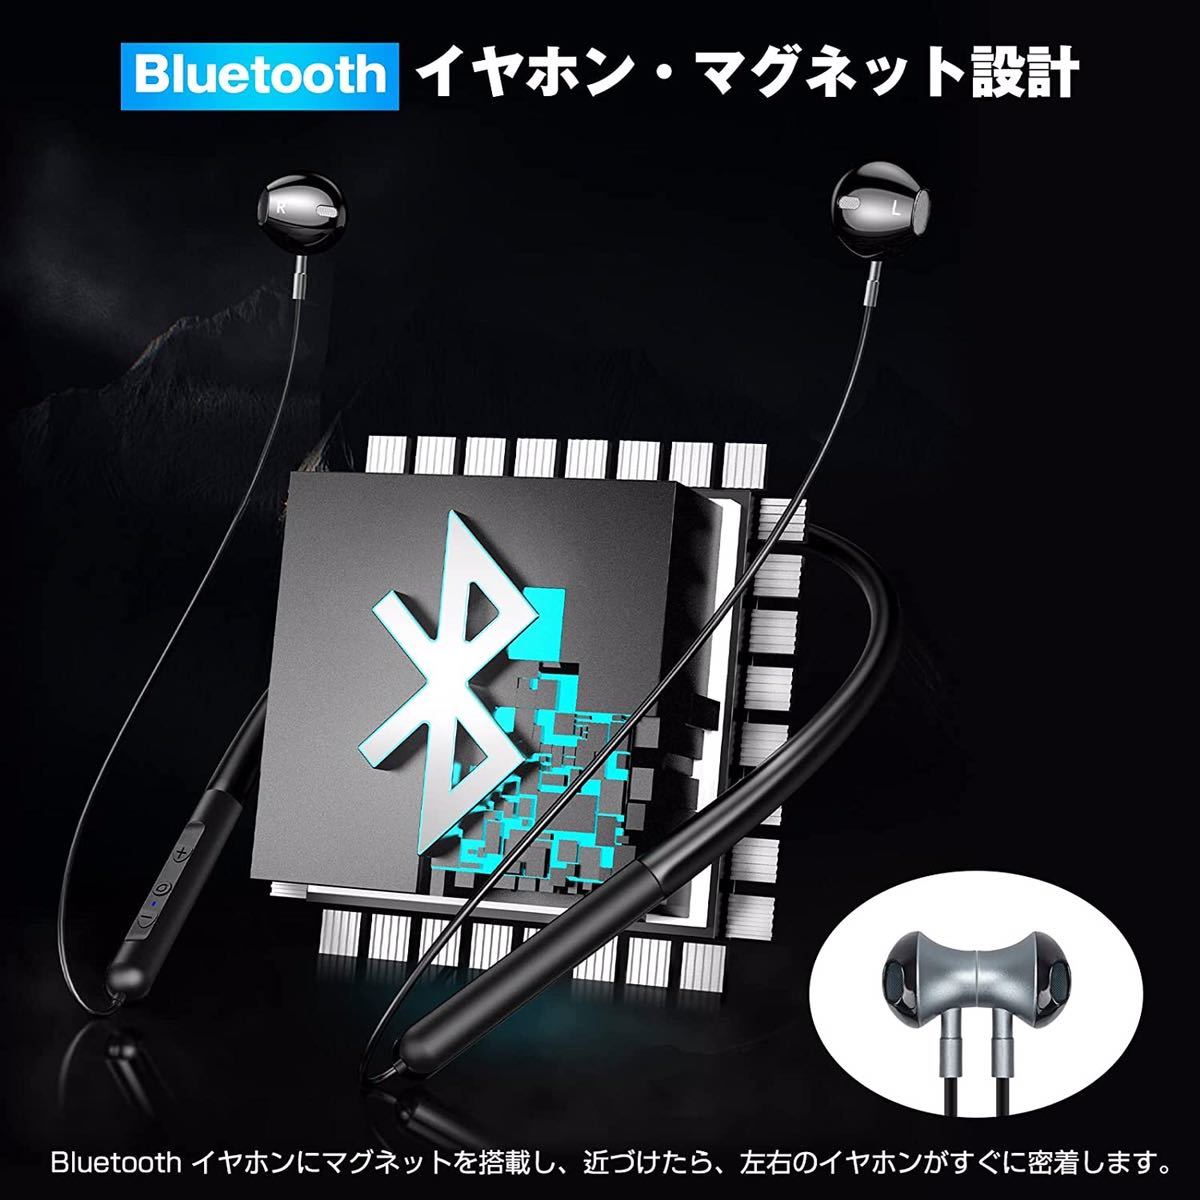 【新型 Bluetooth 5.1技術】ワイヤレス イヤホン